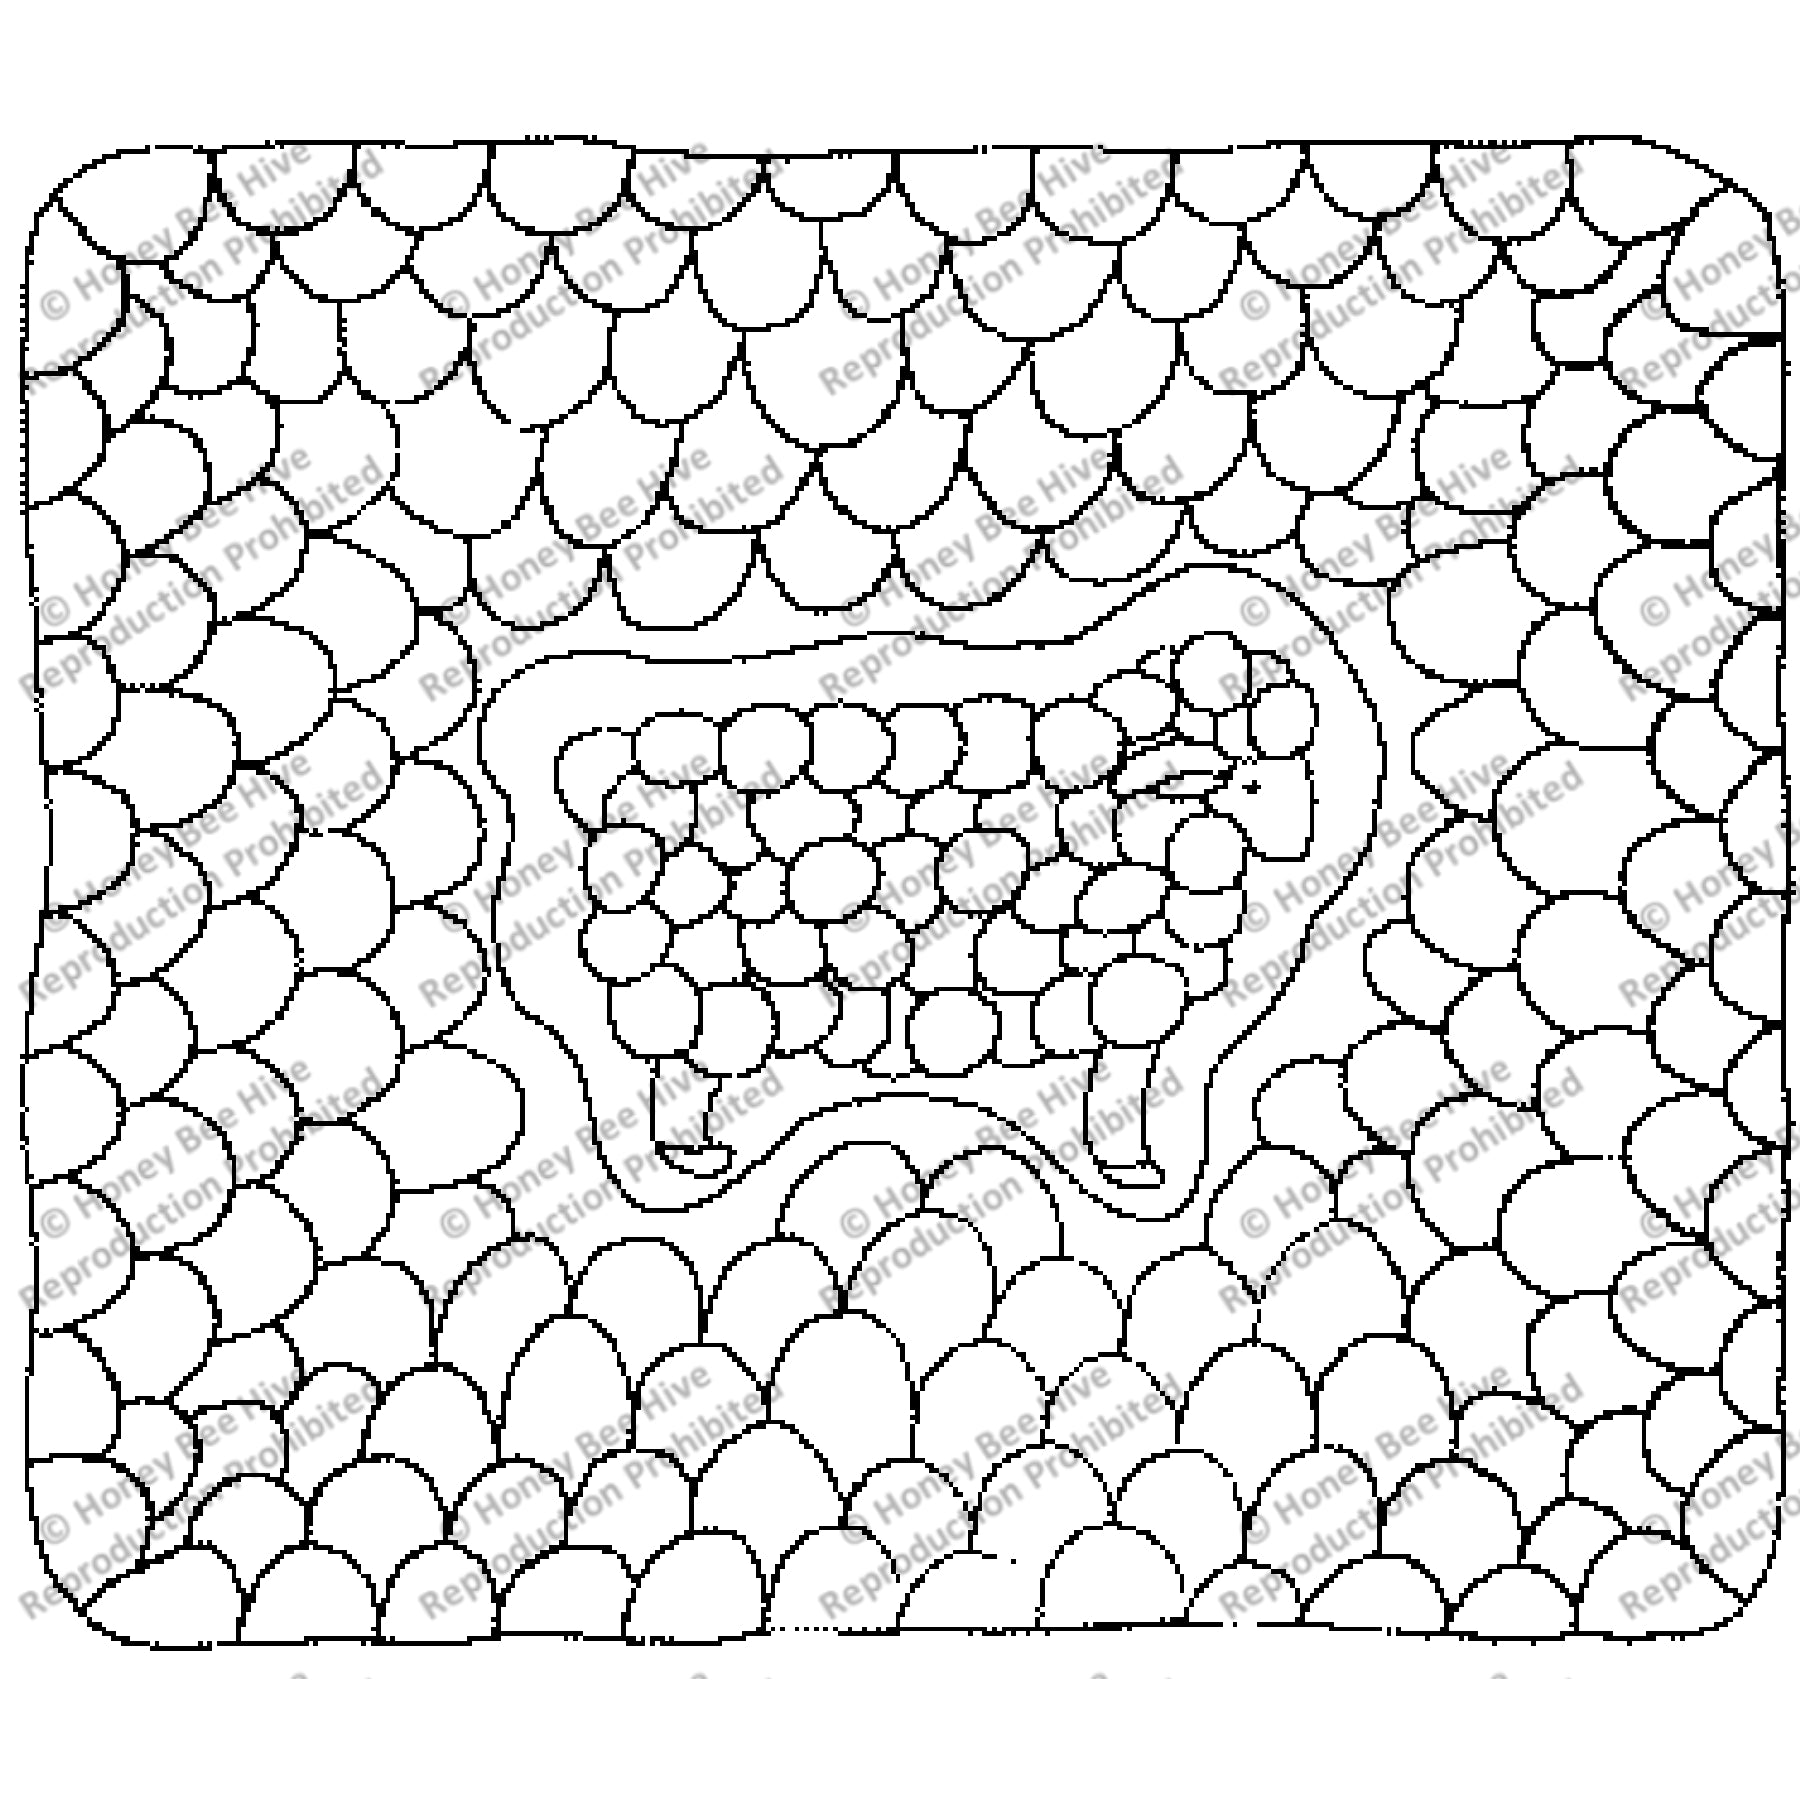 Lamb's Tongue, rug hooking pattern